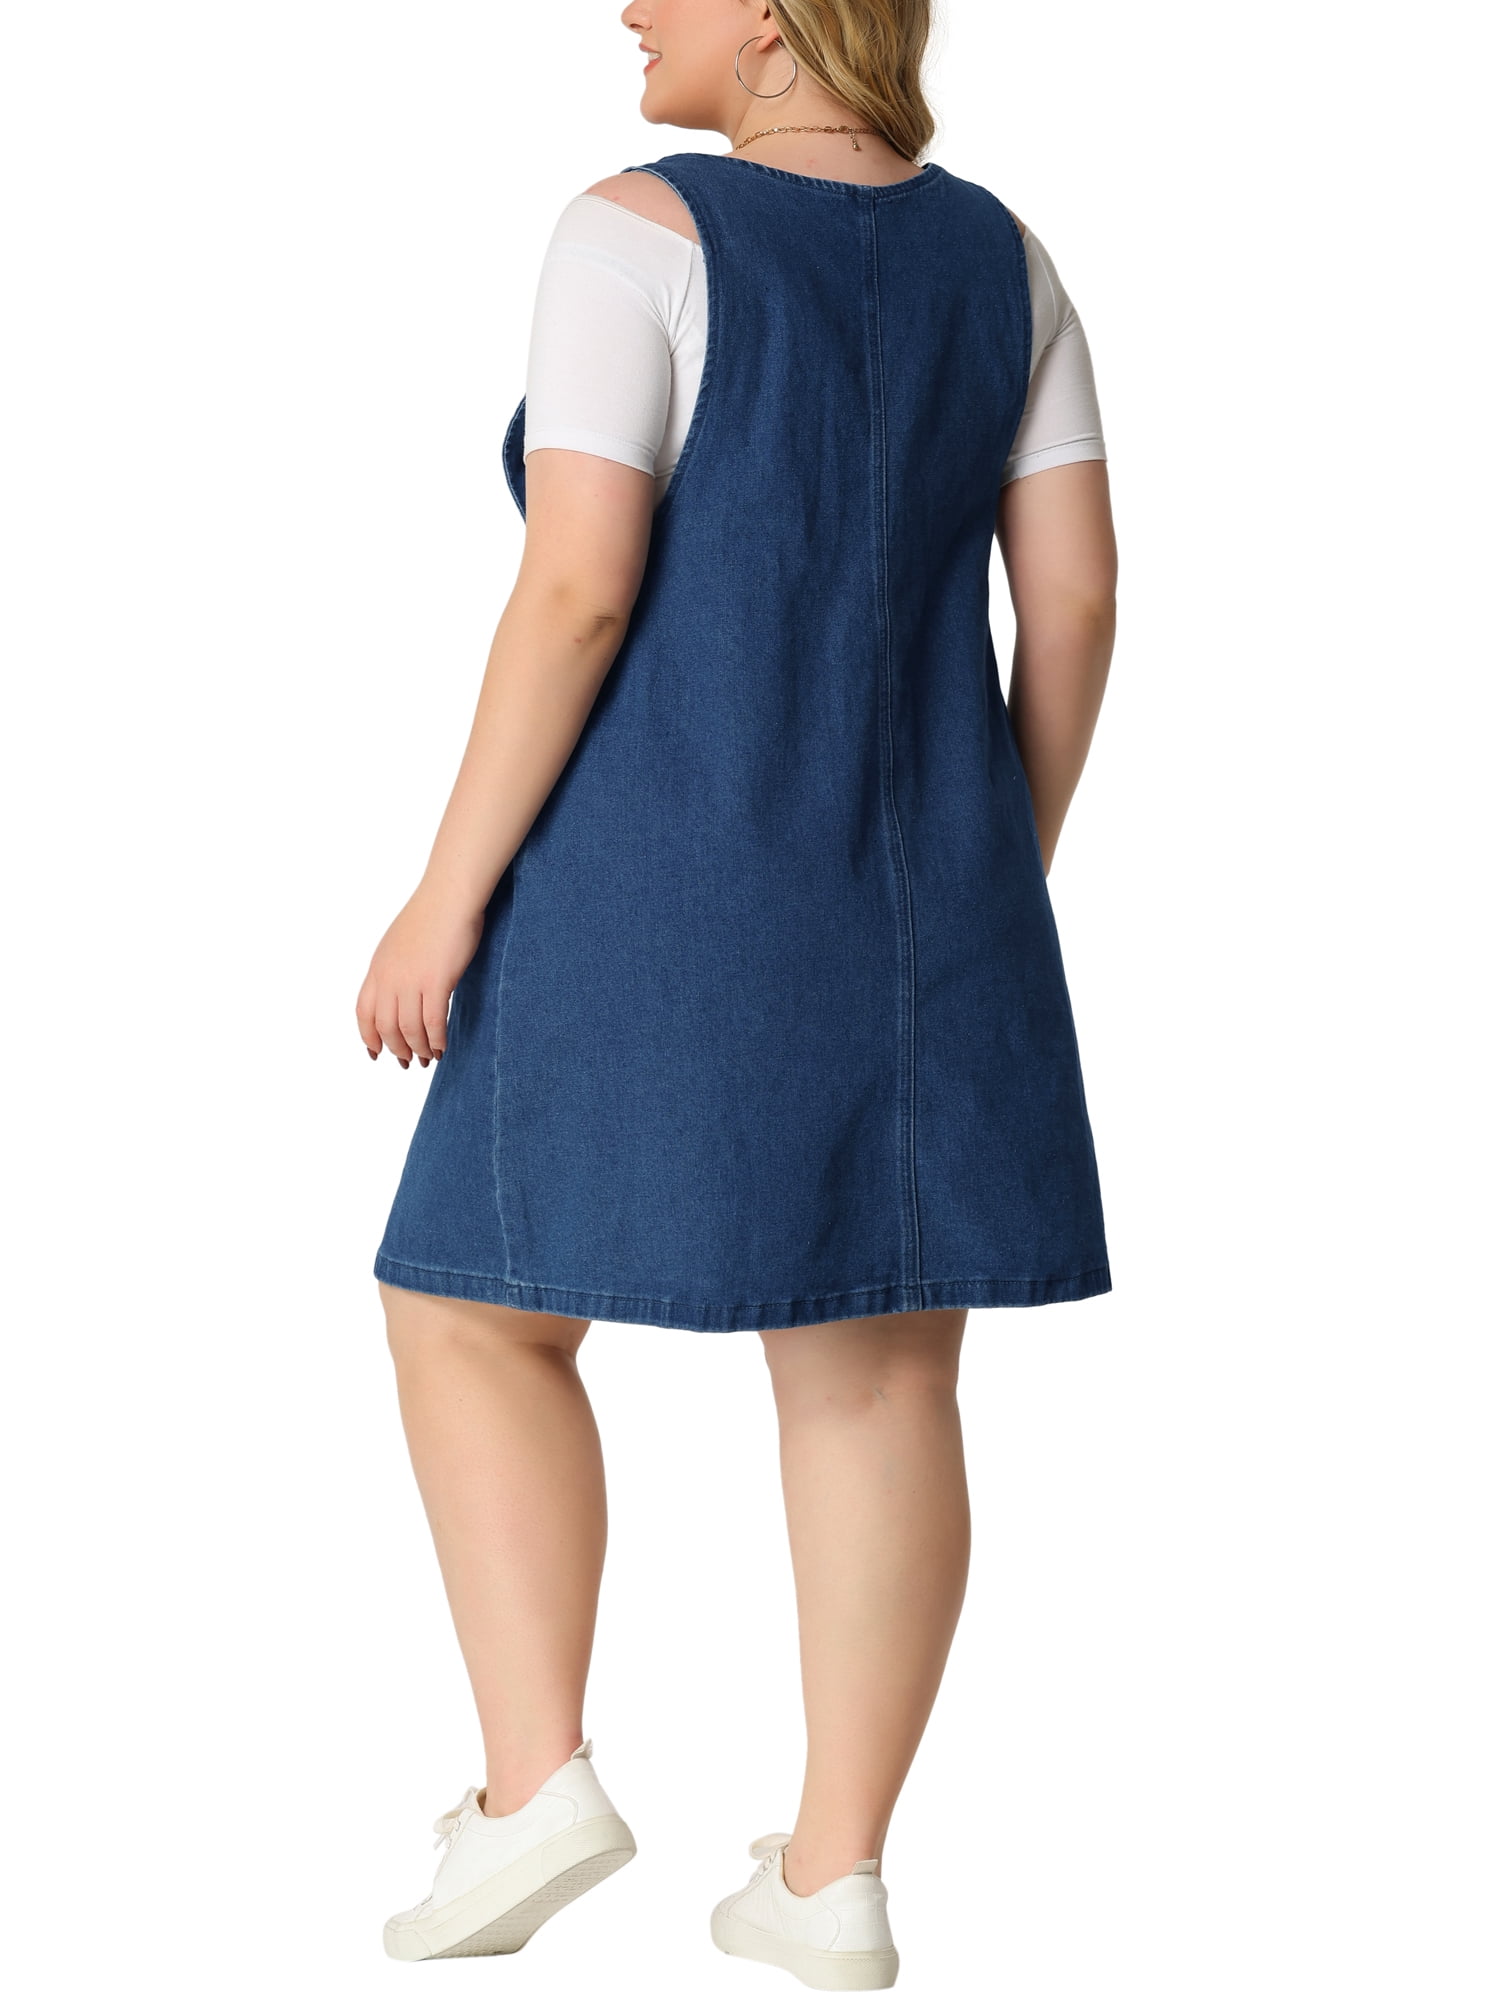 Hula hop røre ved skammel Agnes Orinda Plus Size Denim Overall Dresses for Women Adjustable Straps  Denim Bib Jumper with Pockets - Walmart.com